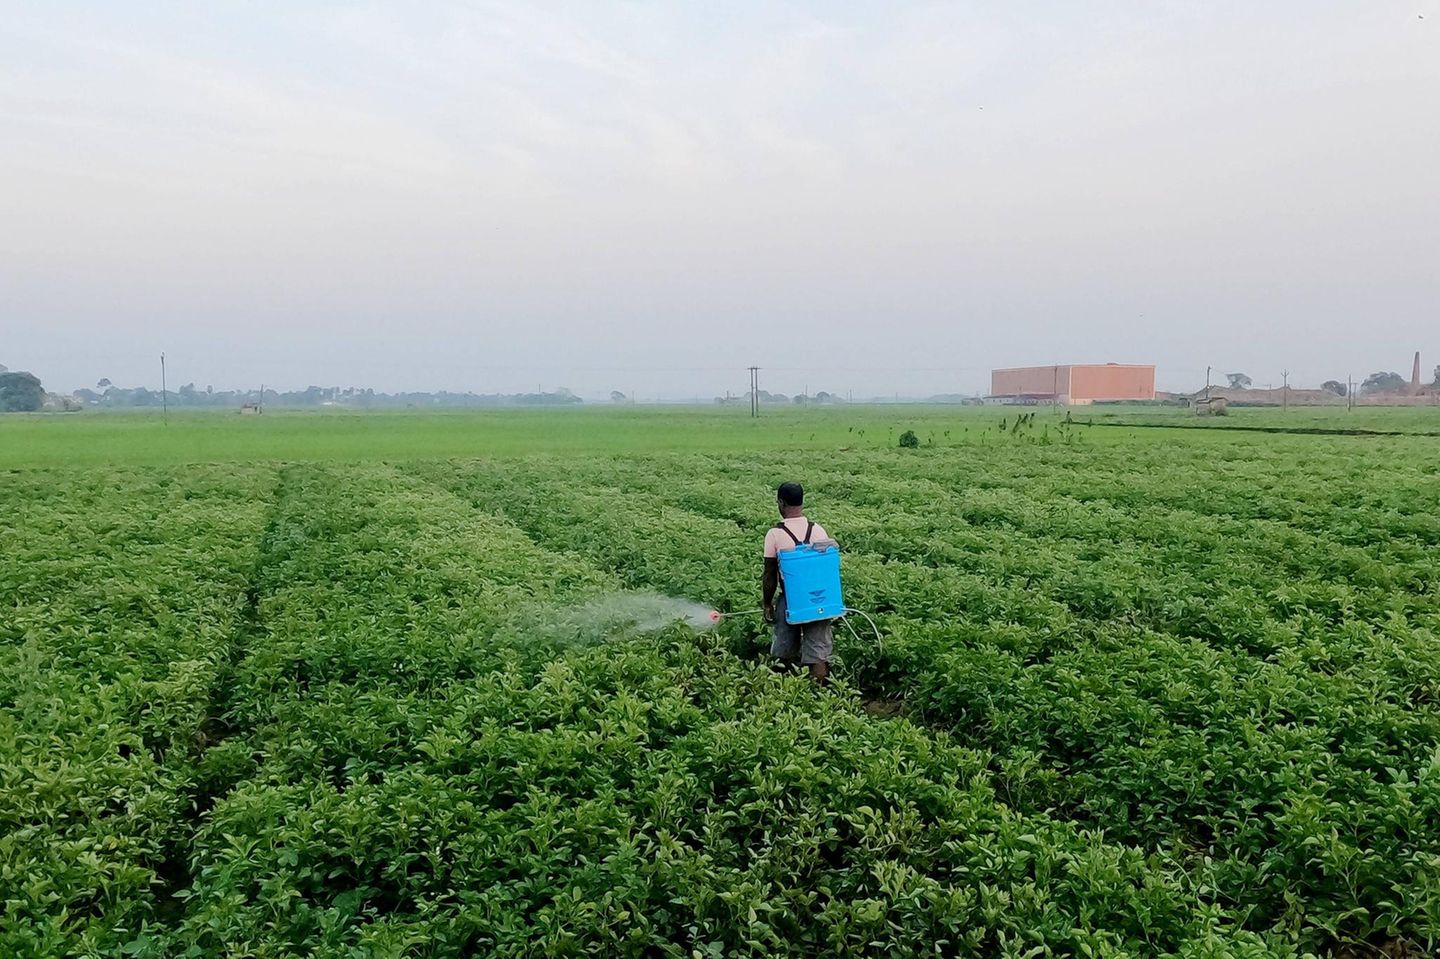 Ein Landwirt versprüht Pestizide auf einem Feld am Rande von Kalkutta in Indien